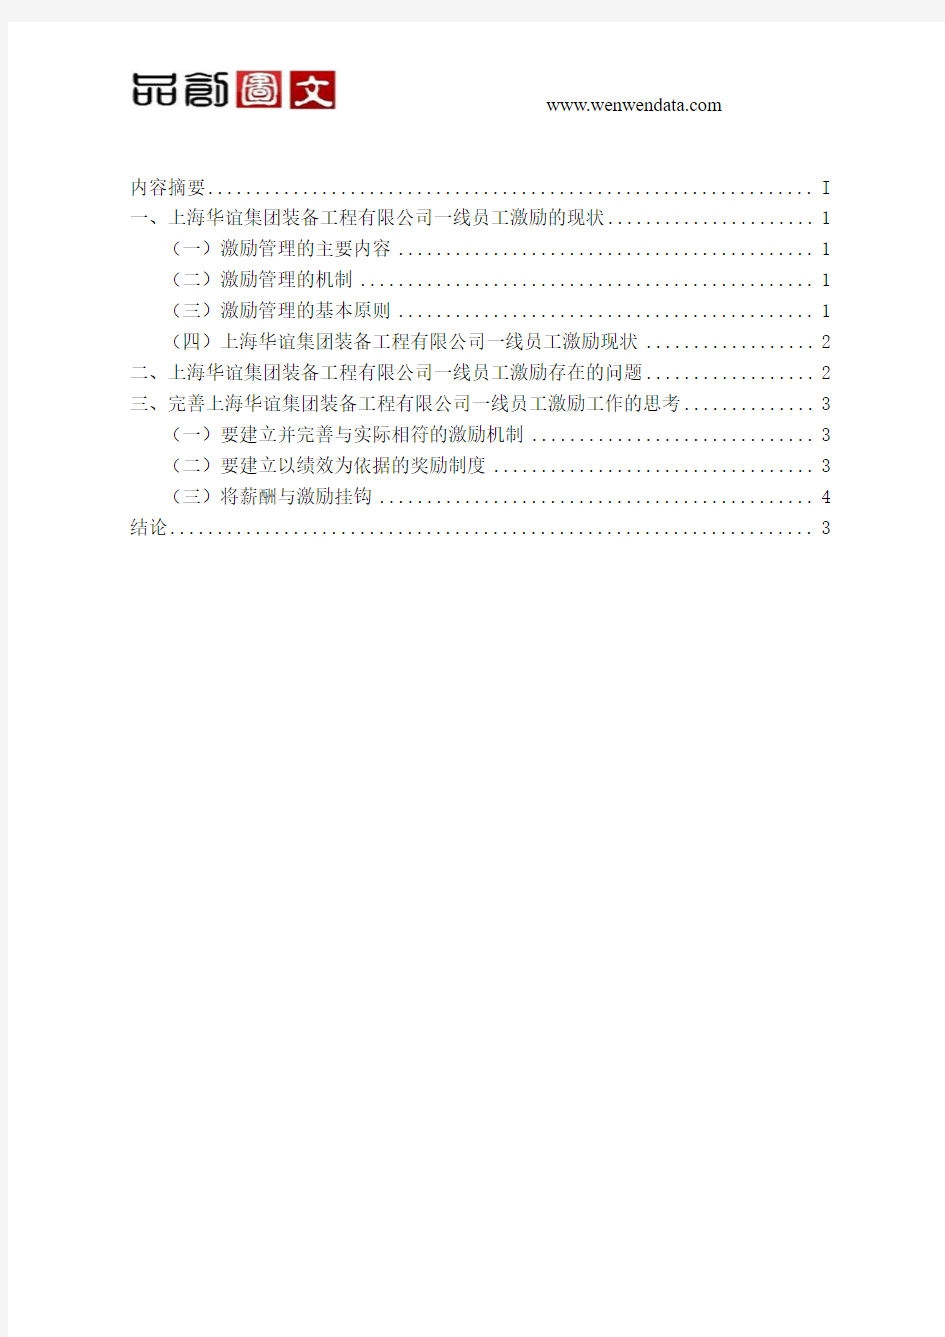 关于上海华谊集团装备工程有限公司一线员工激励的分析报告-毕业论文